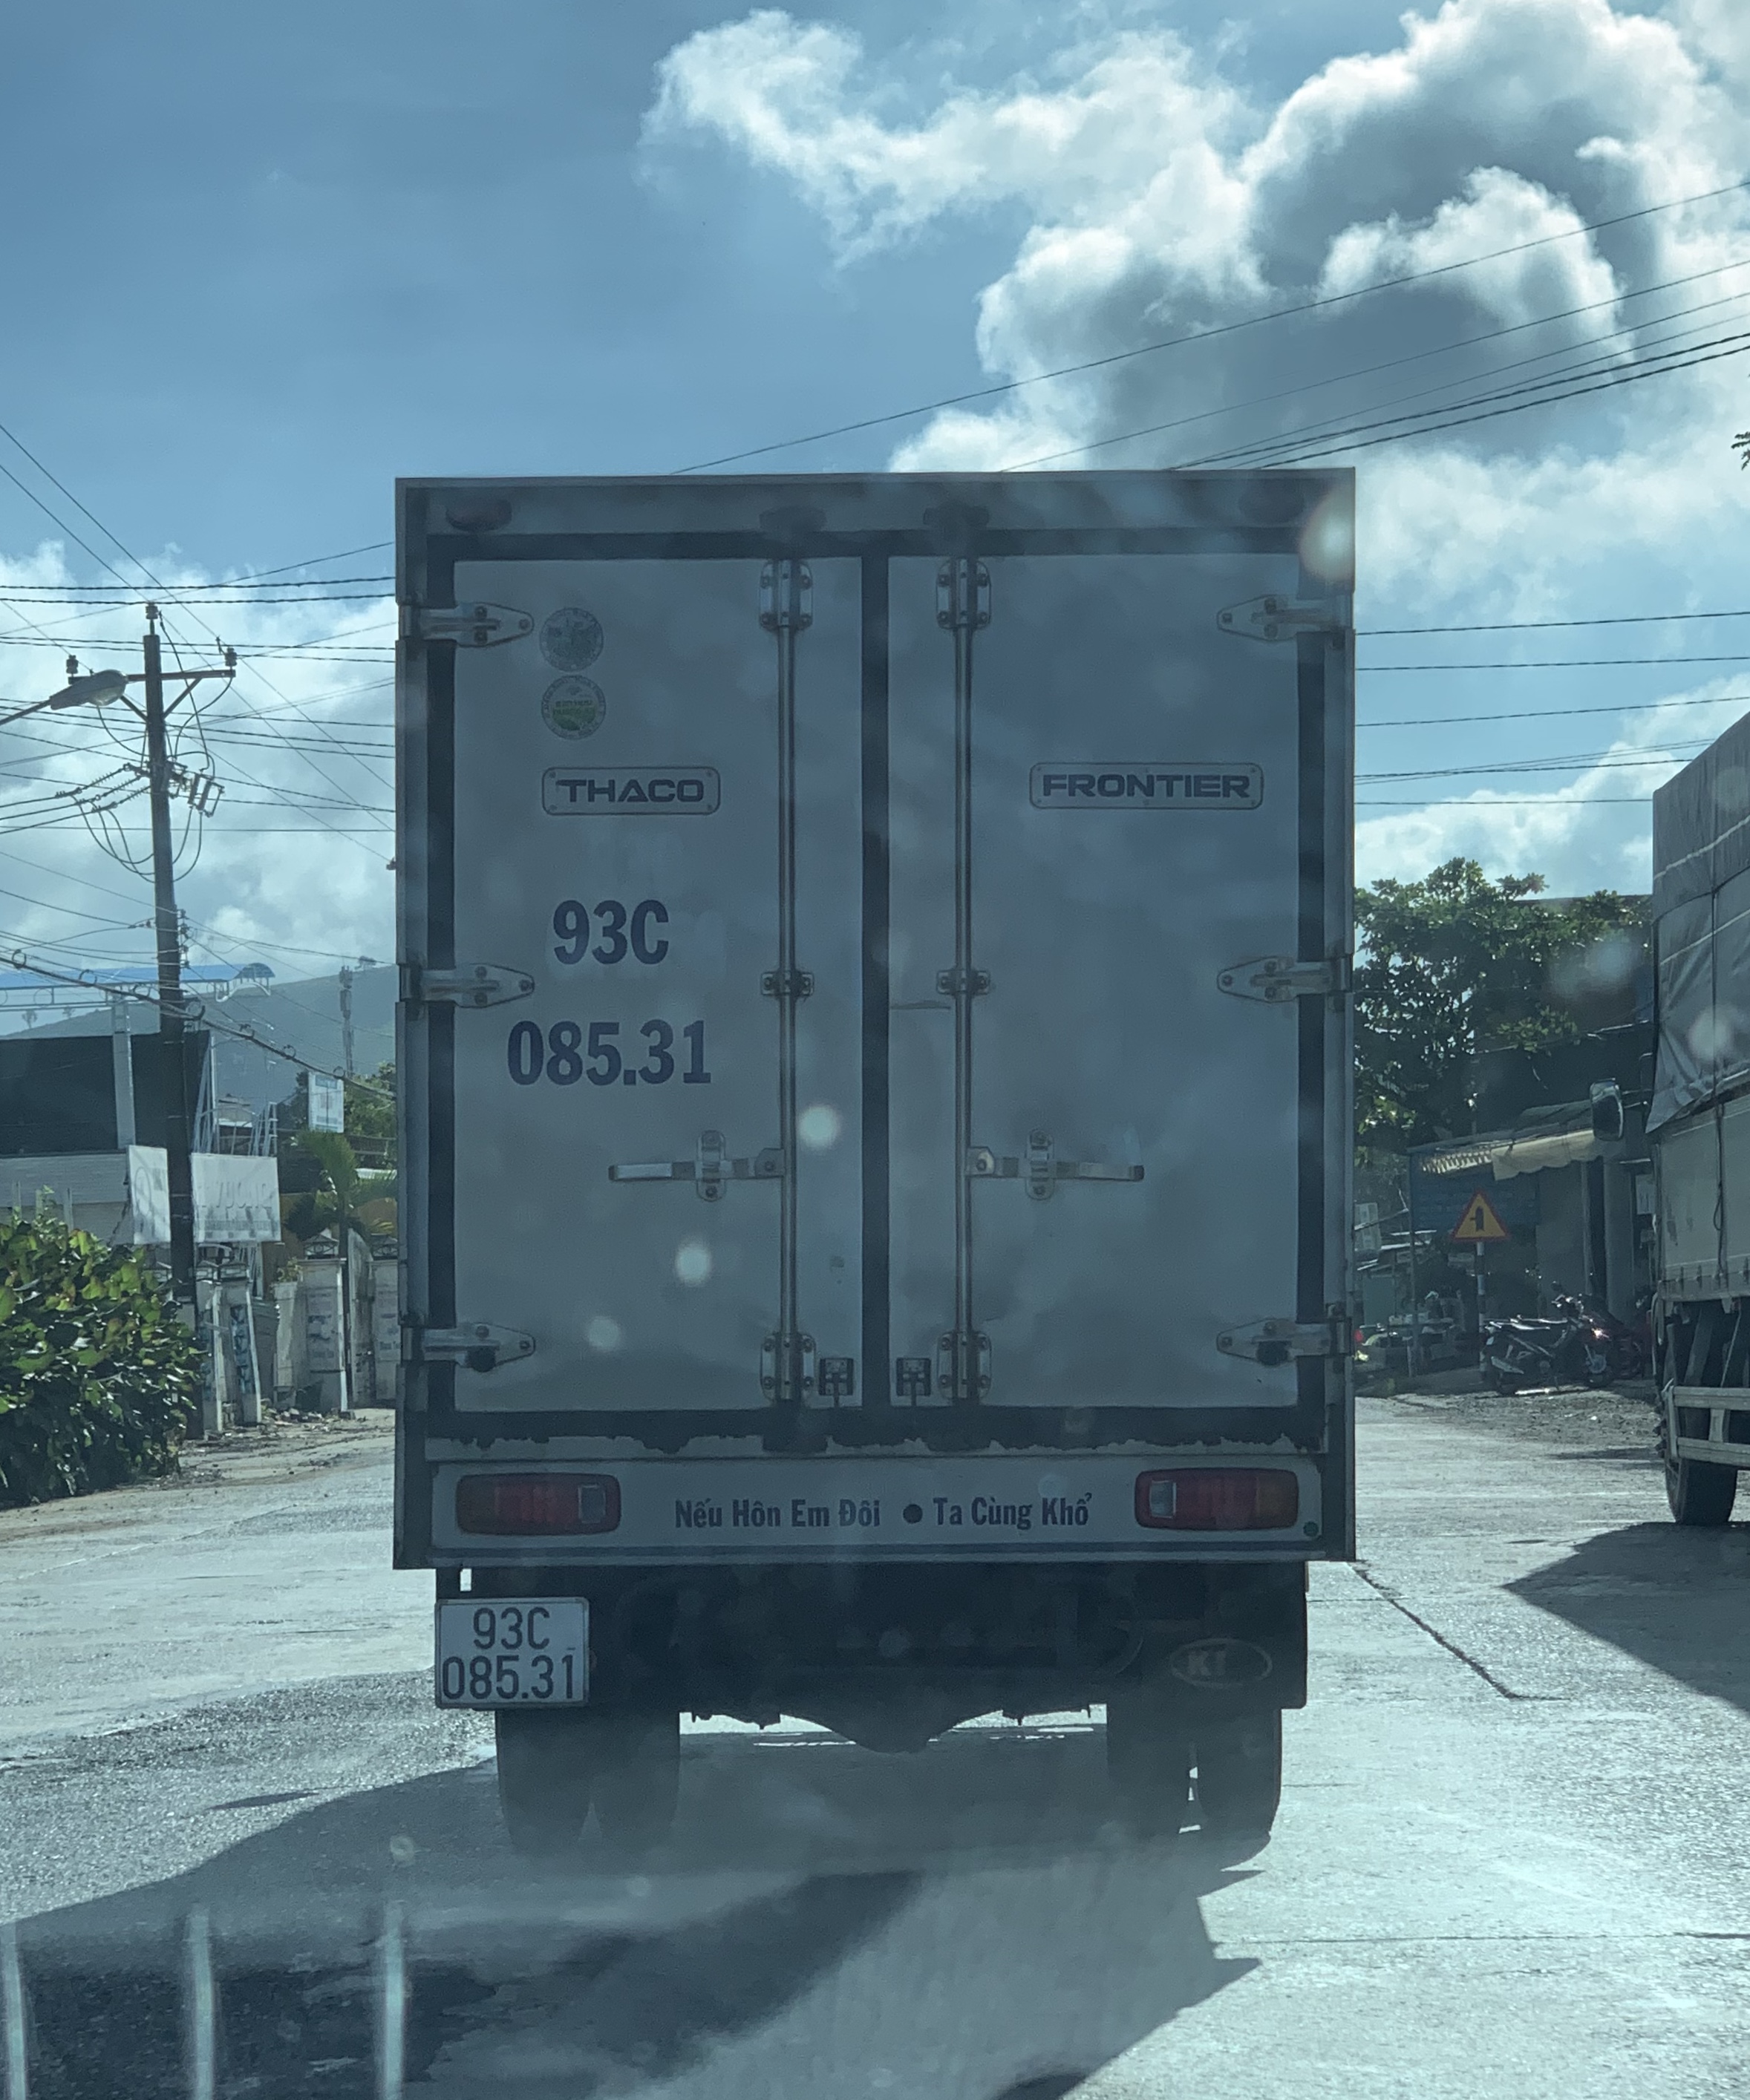 Anh em có hay để ý dòng chữ ở sau xe tải không?